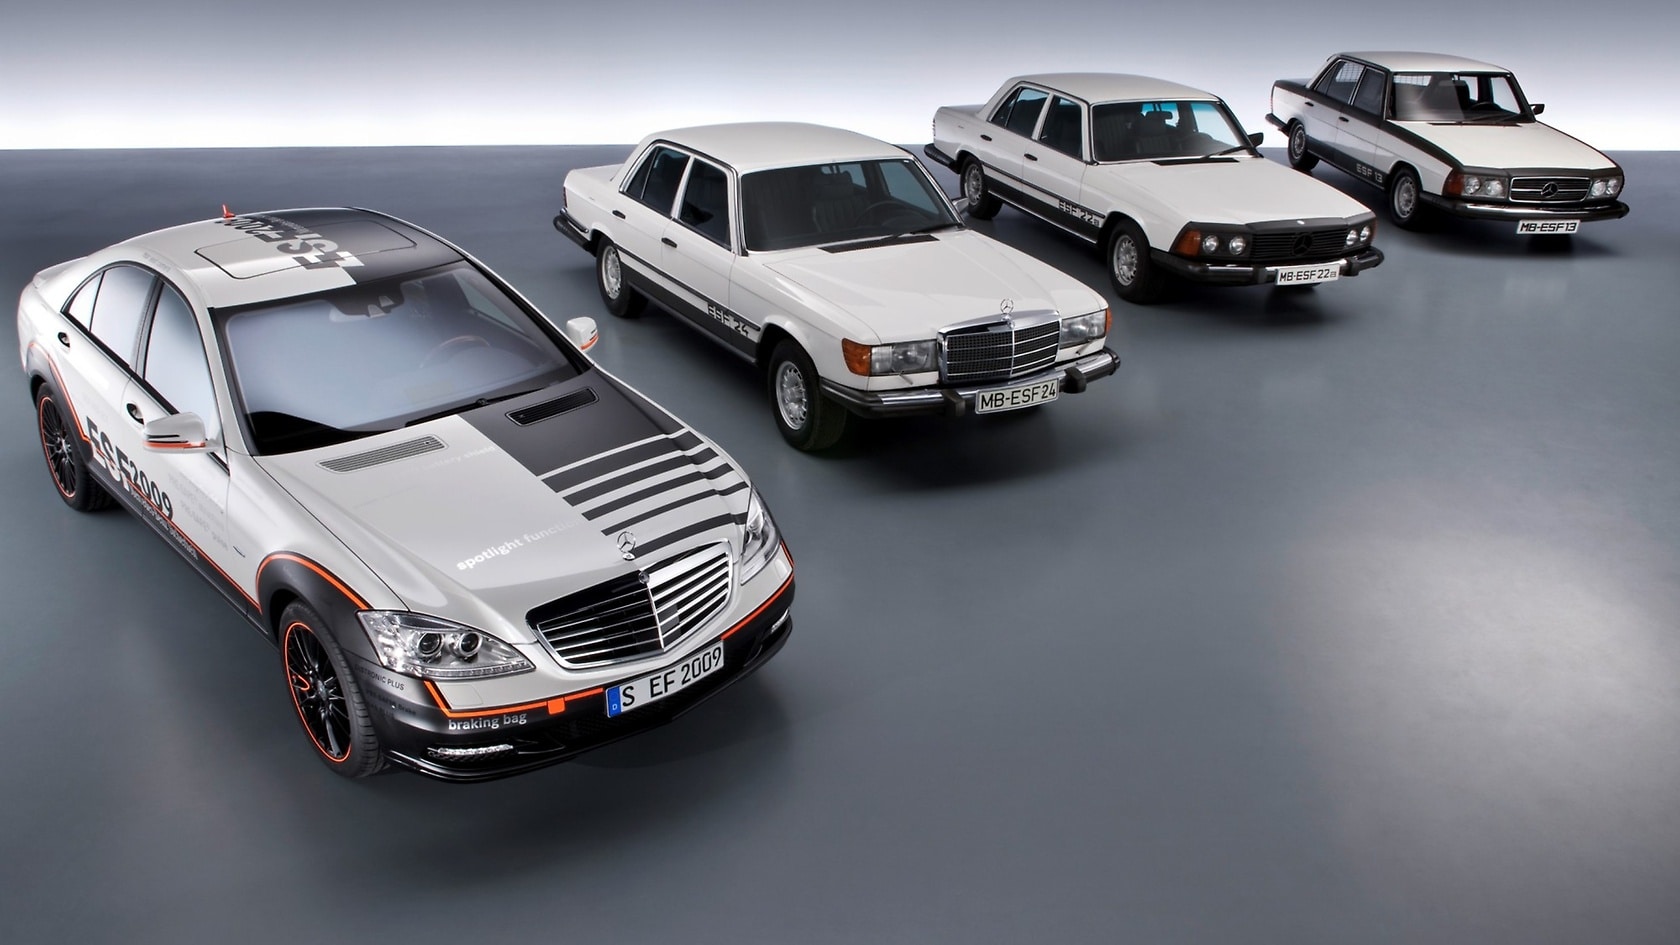 Mercedes-Benz Experimental-Sicherheits-Fahrzeuge ESF 2009 (2009), ESF 24 (1974), ESF 22a (1973), ESF 13 (1972) – von links nach rechts.